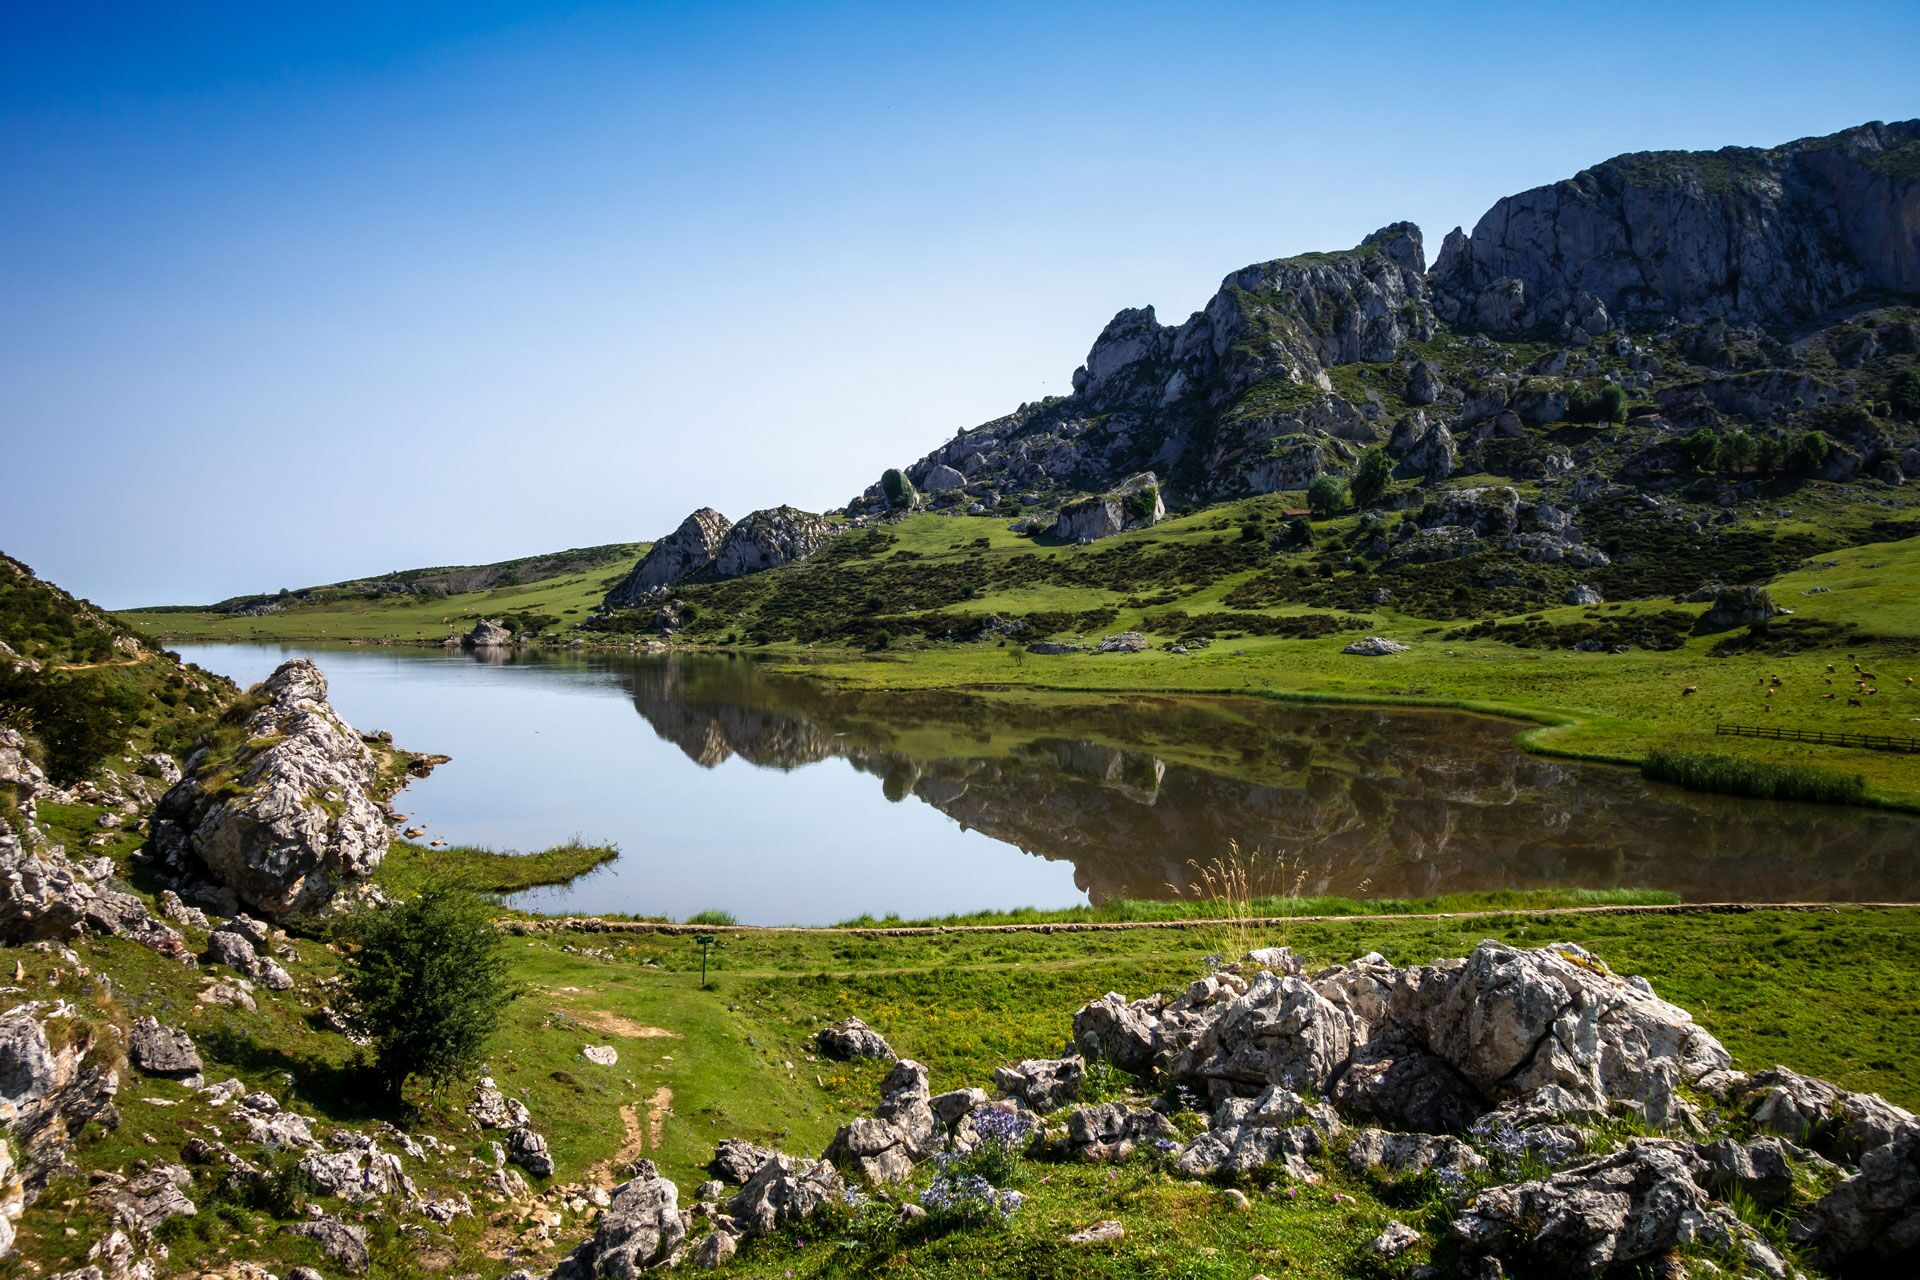 Travel Guide: Asturias, a “natural paradise” to discover